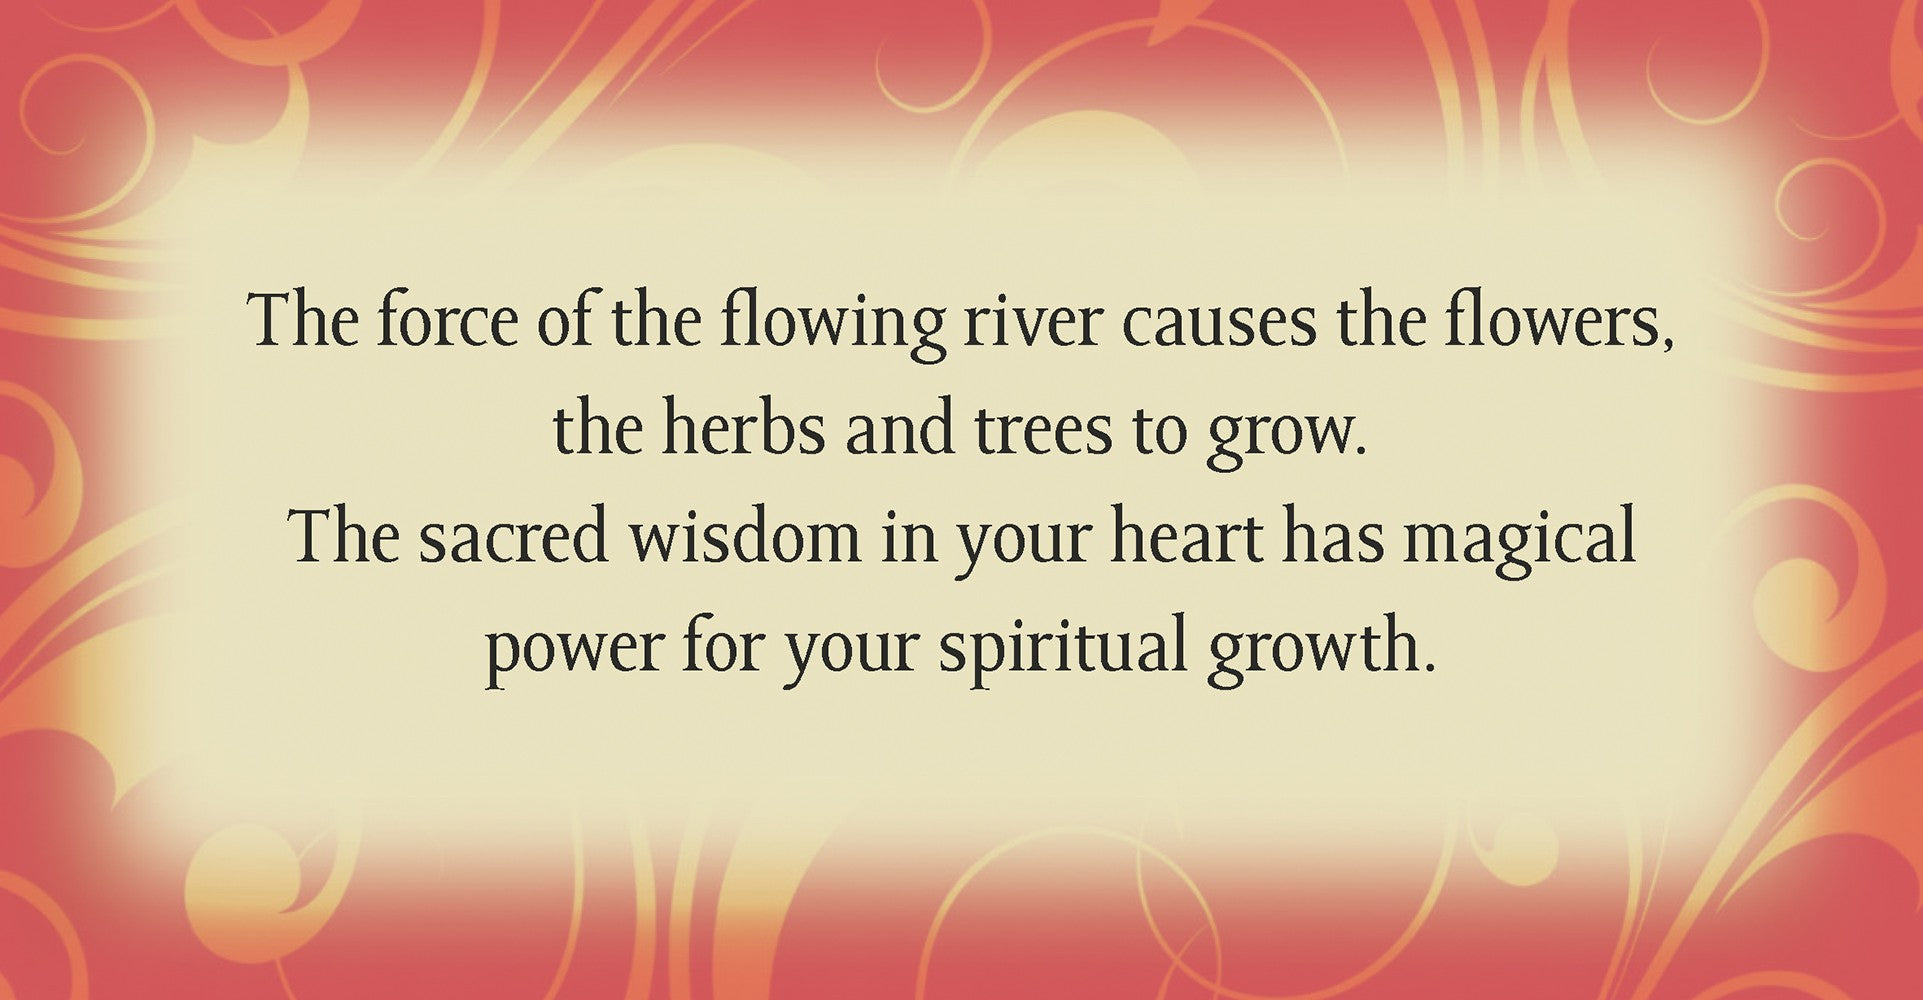 Spiritual growth card